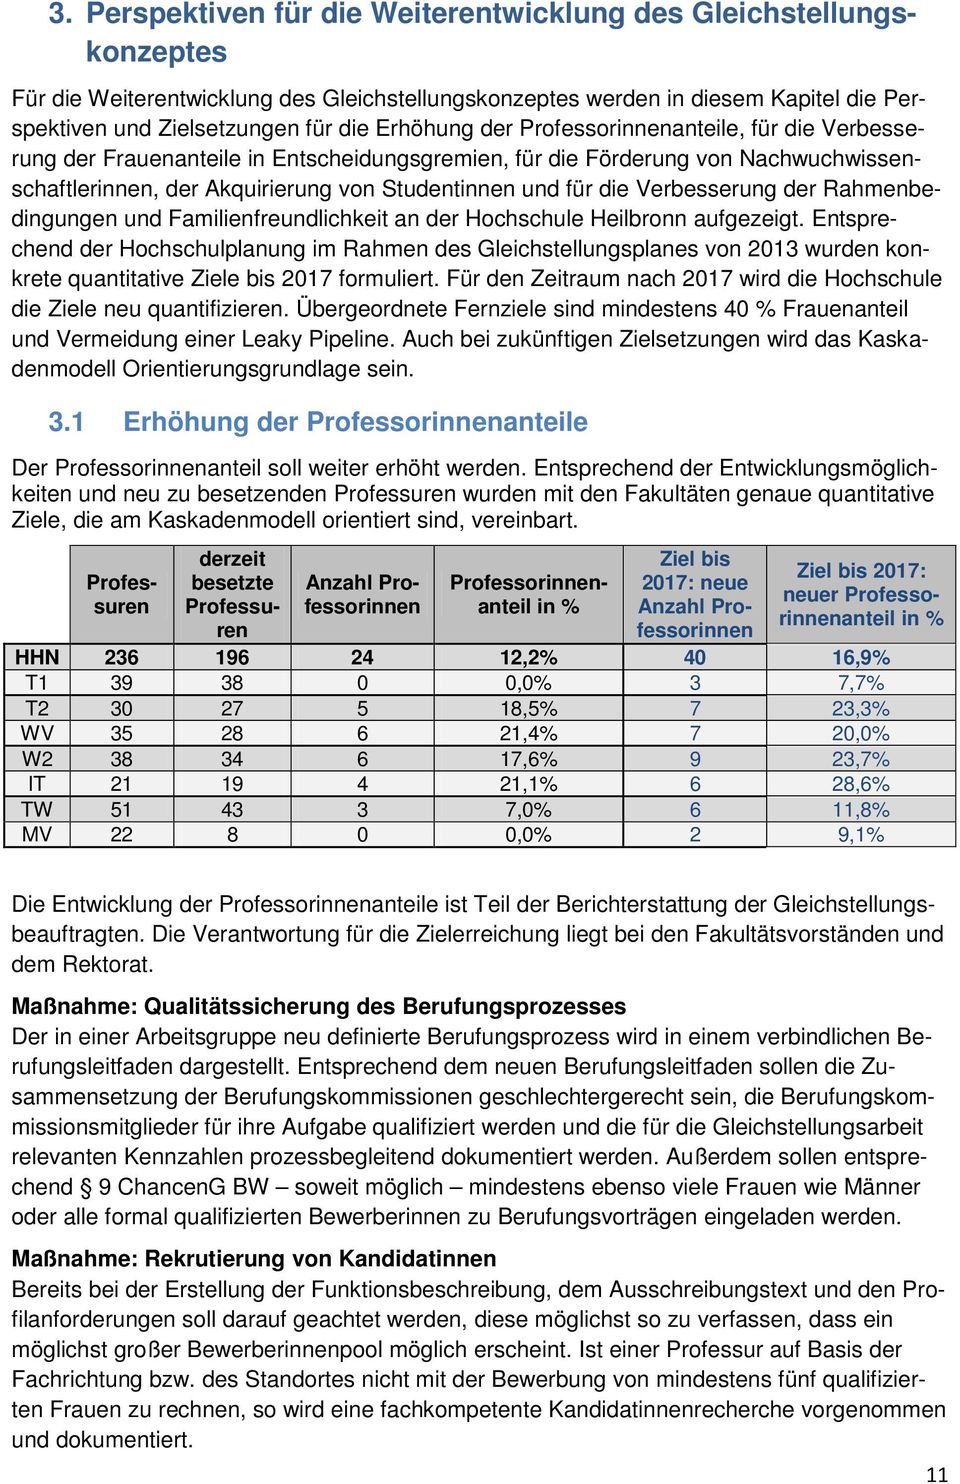 Verbesserung der Rahmenbedingungen und Familienfreundlichkeit an der Hochschule Heilbronn aufgezeigt.